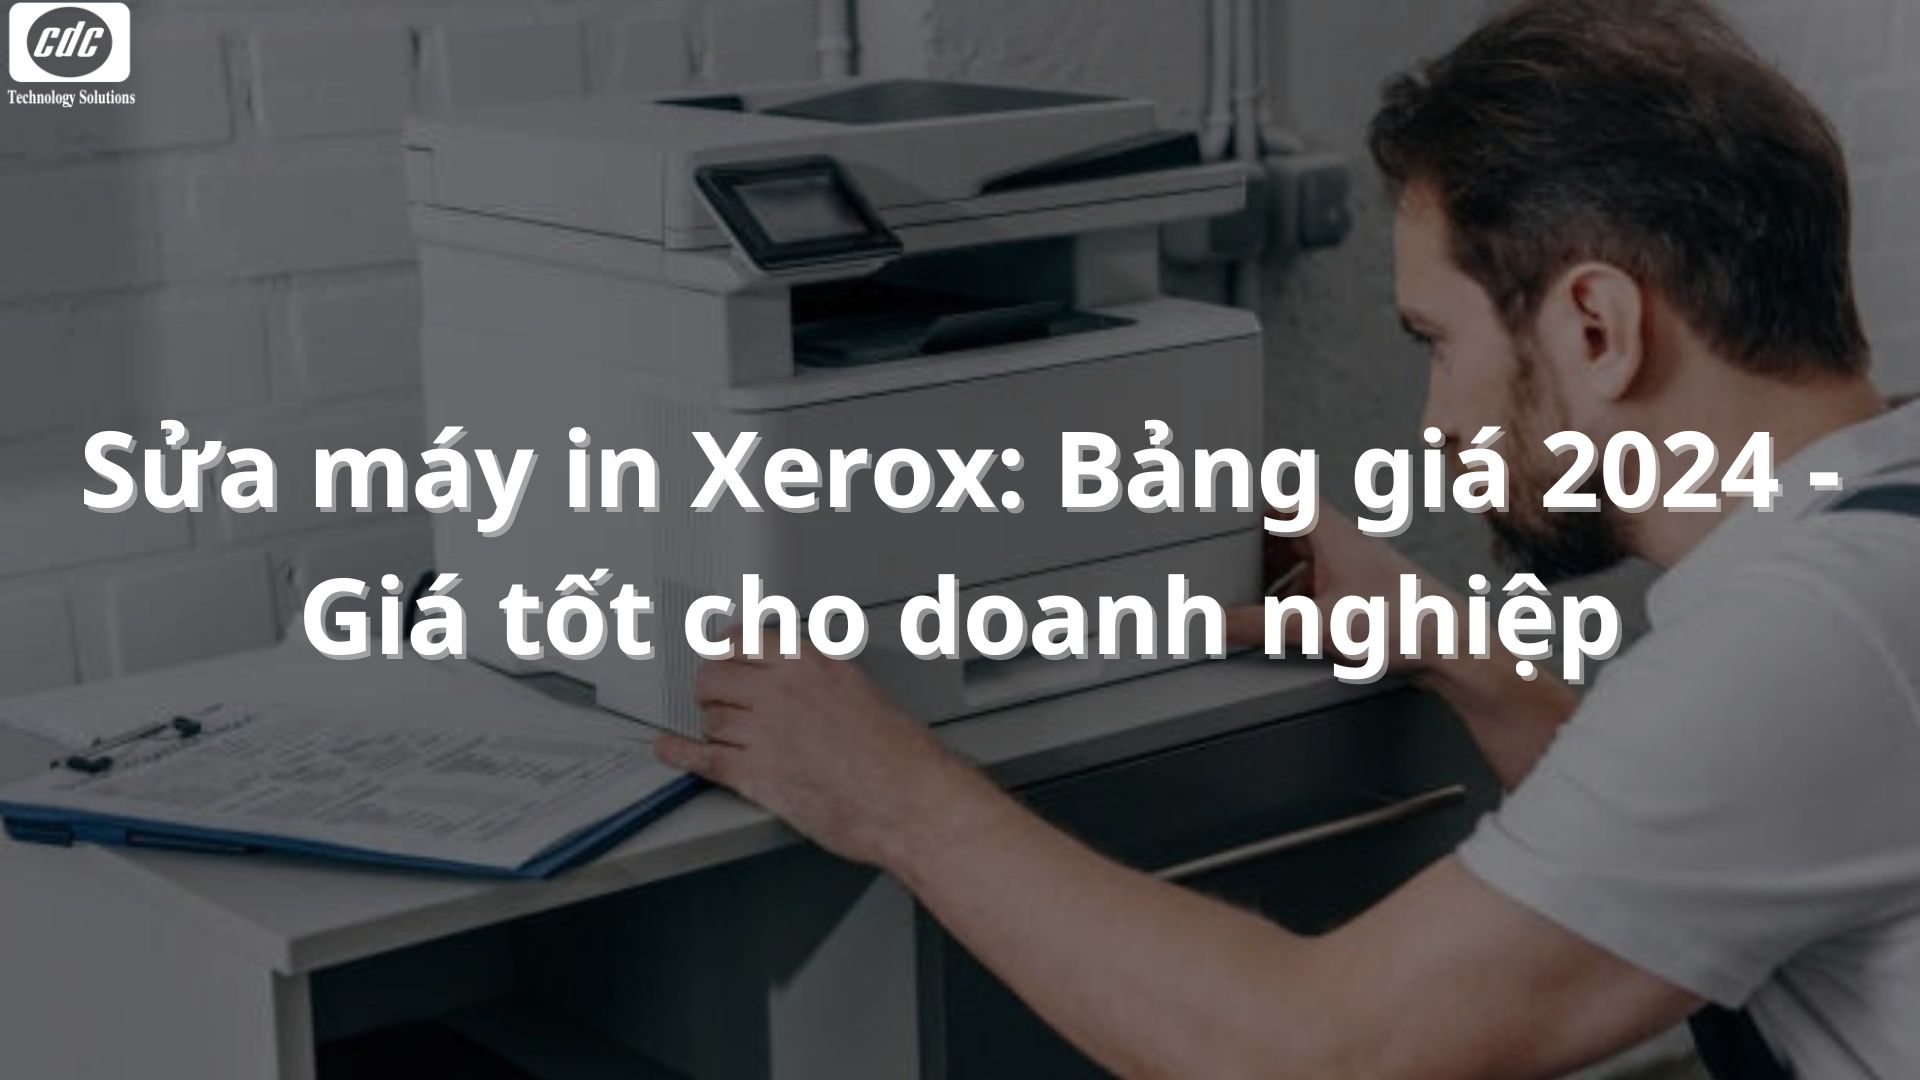 Sửa máy in Xerox: Bảng giá 2024 - Giá tốt cho doanh nghiệp